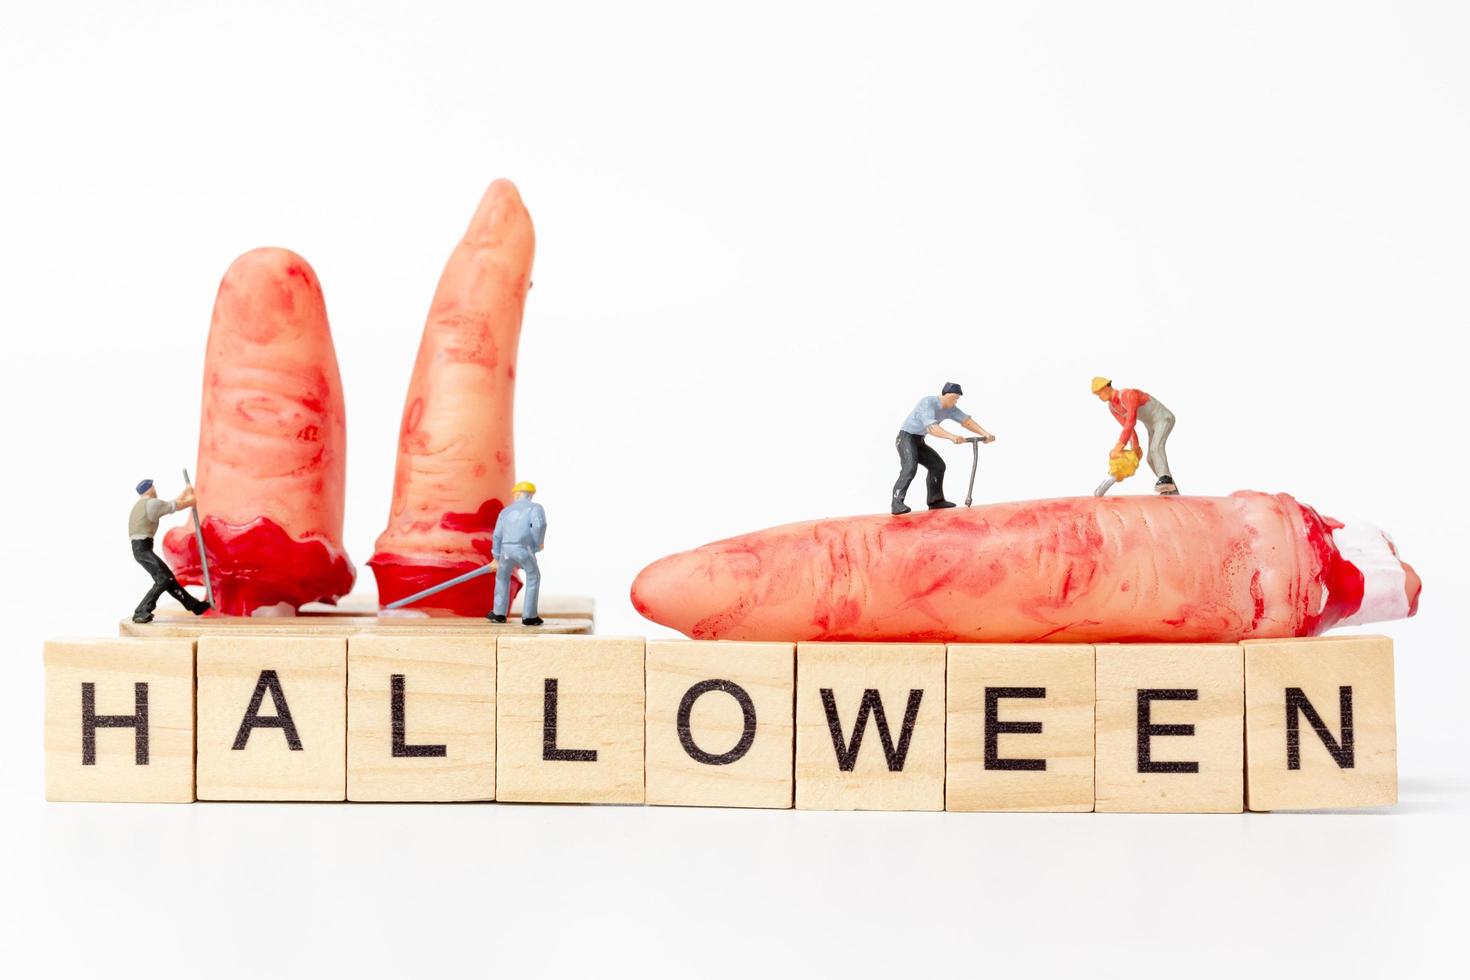 trabalhadores em miniatura se unem para criar adereços de festa de halloween com blocos de madeira com o texto halloween em um fundo branco foto